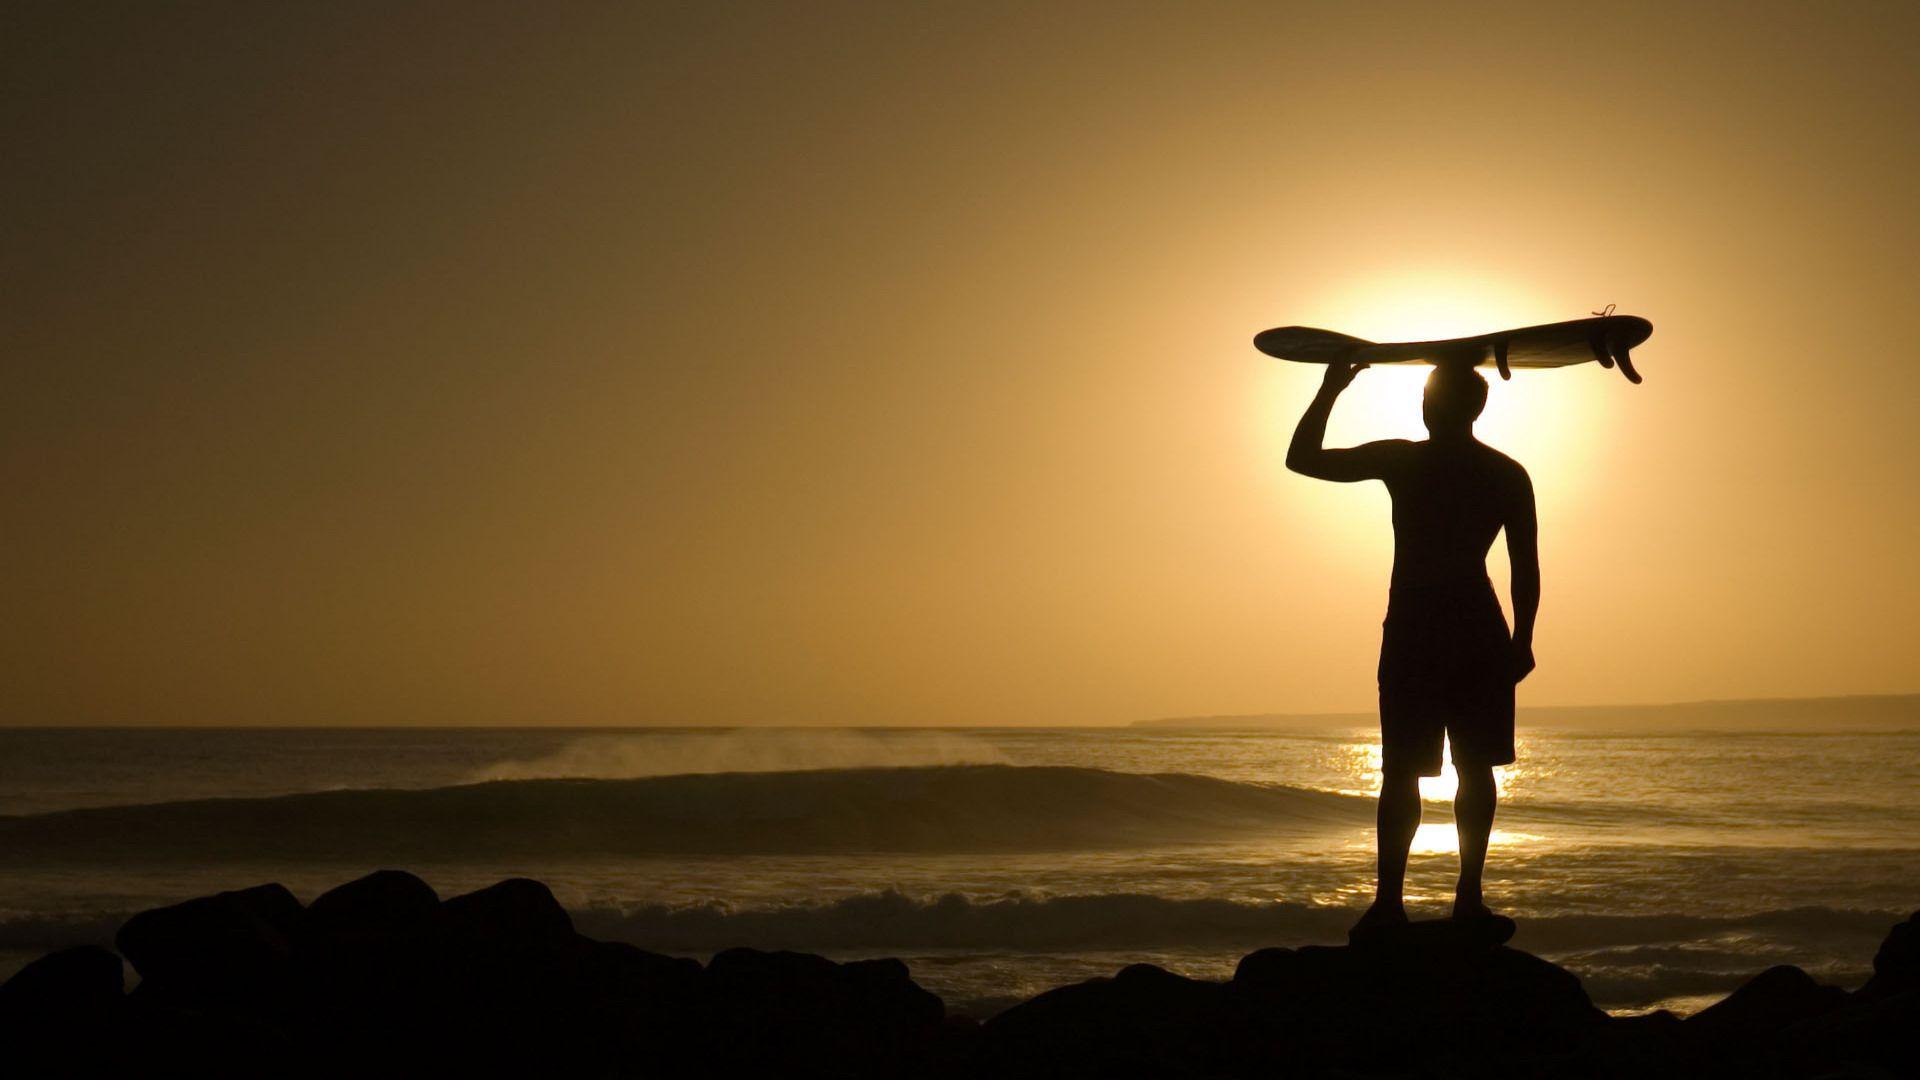 Surfer au coucher du soleil Fonds d'écran. vita mia